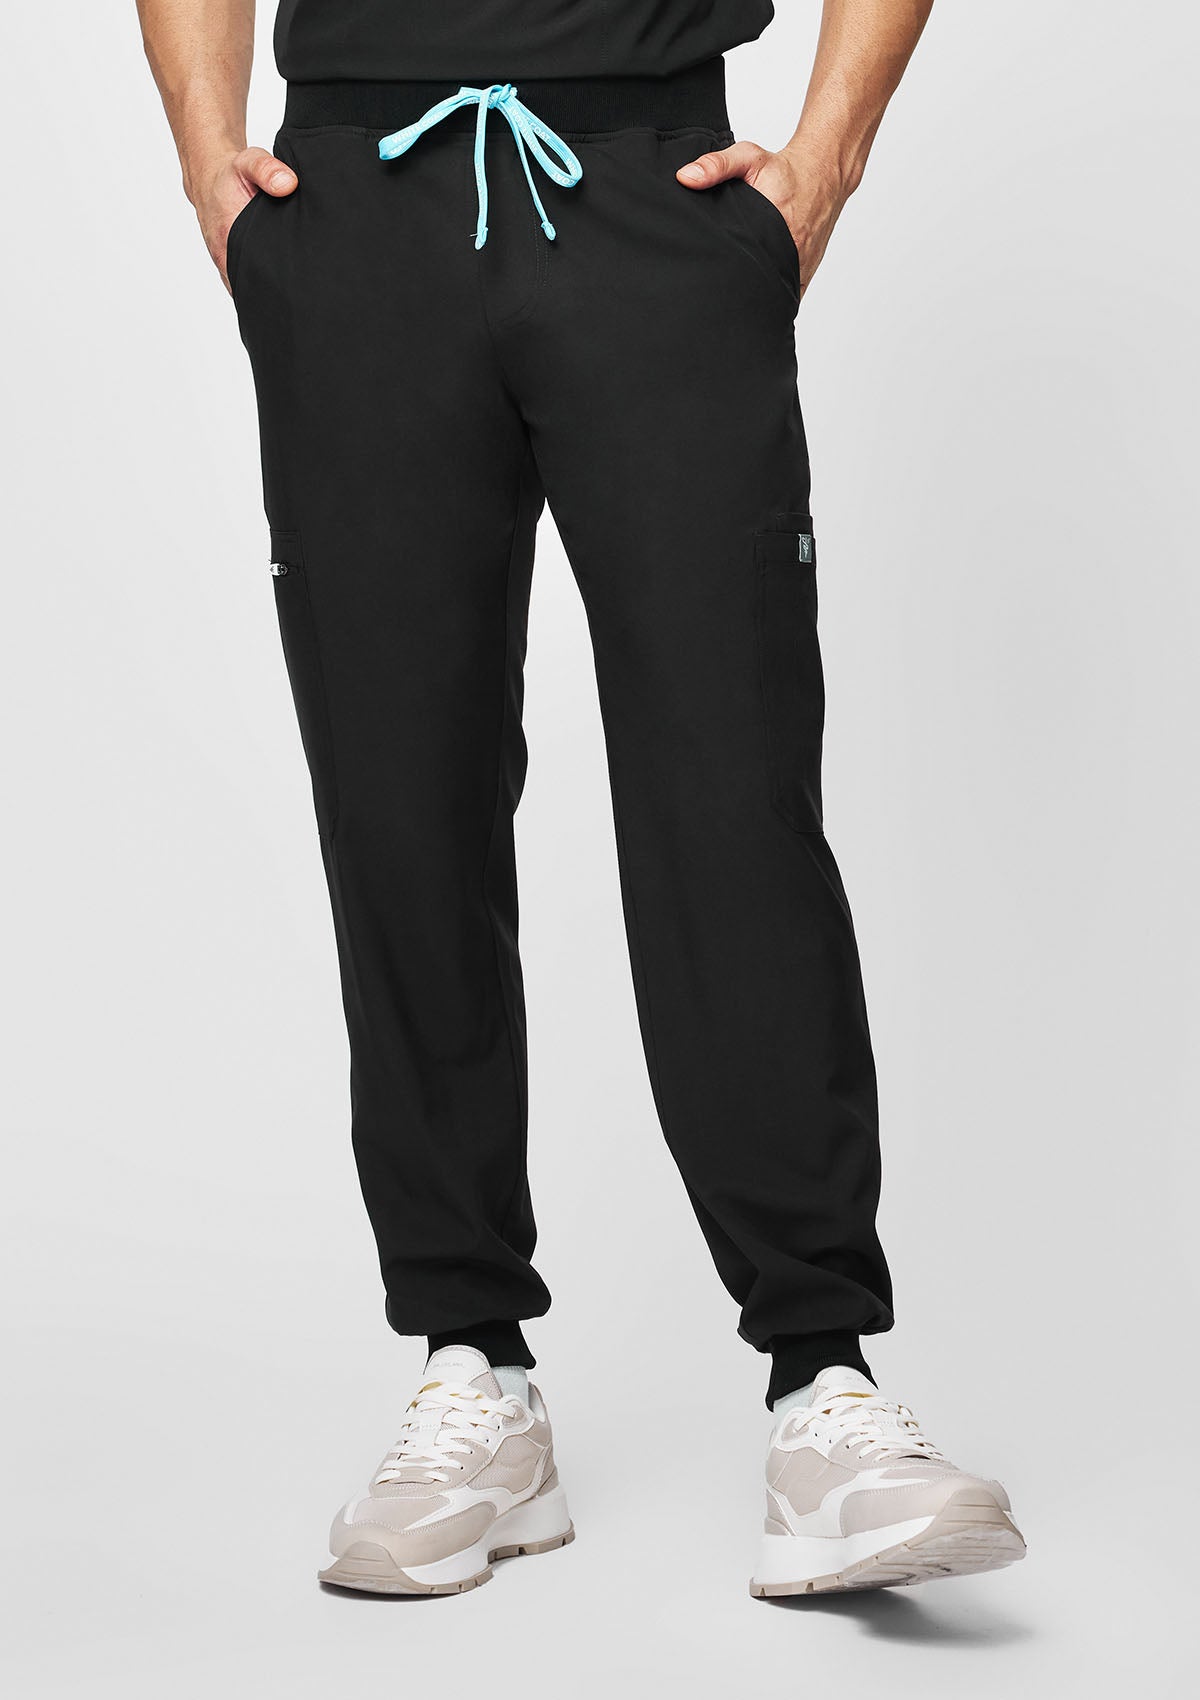 Jogger MoveTech® Scrub Pants 3.0 - Men / So Black